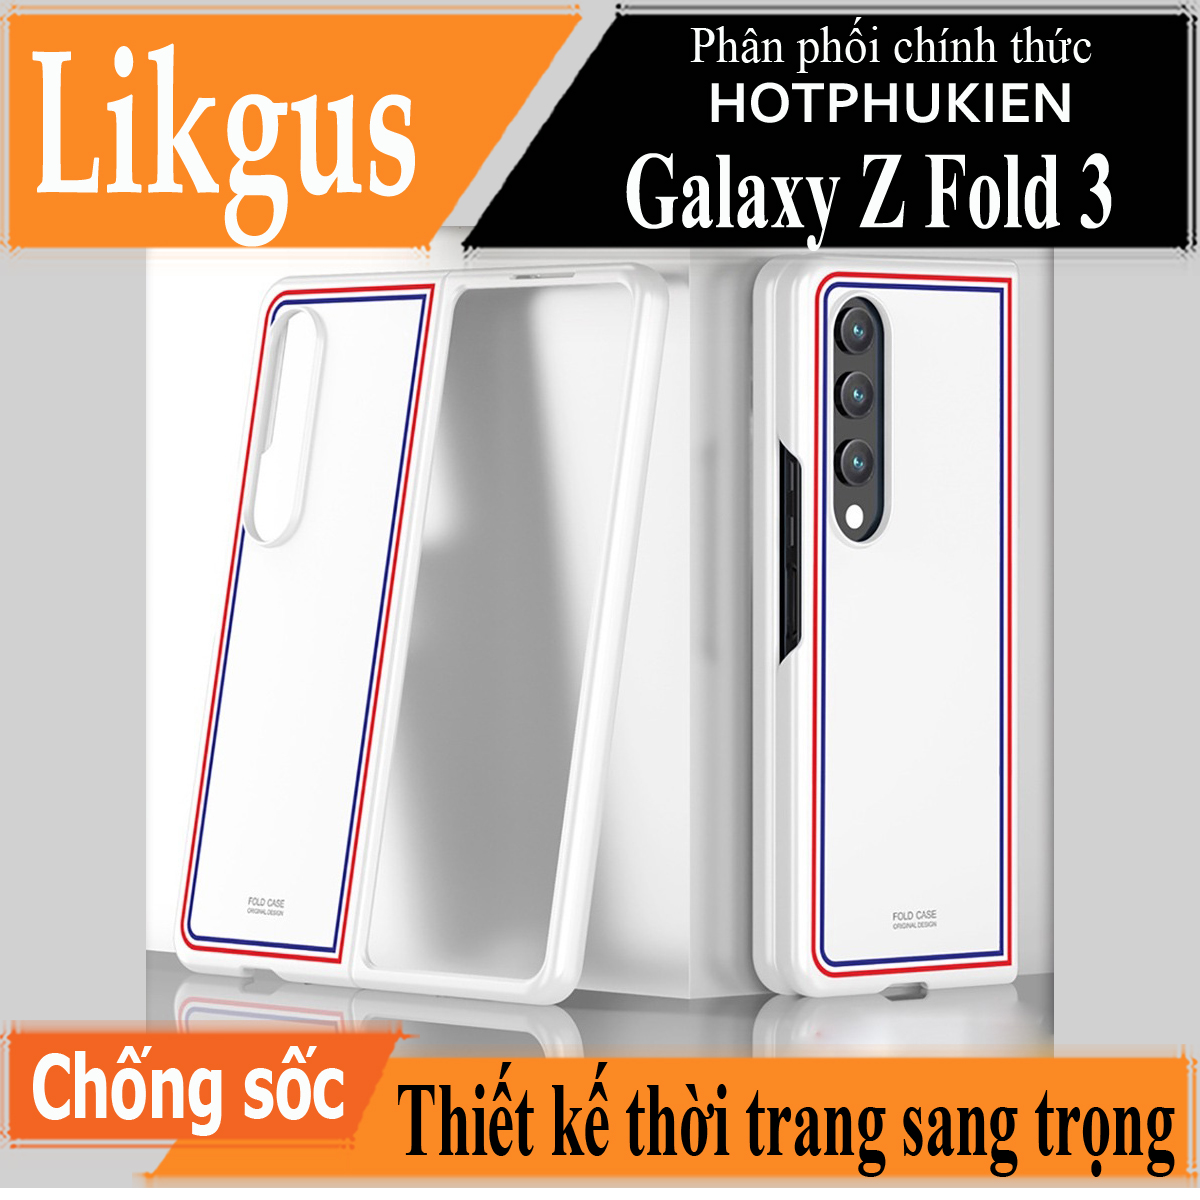 Ốp lưng chống sốc cho Samsung Galaxy Z Fold 3 hiệu Likgus Browne Luxury